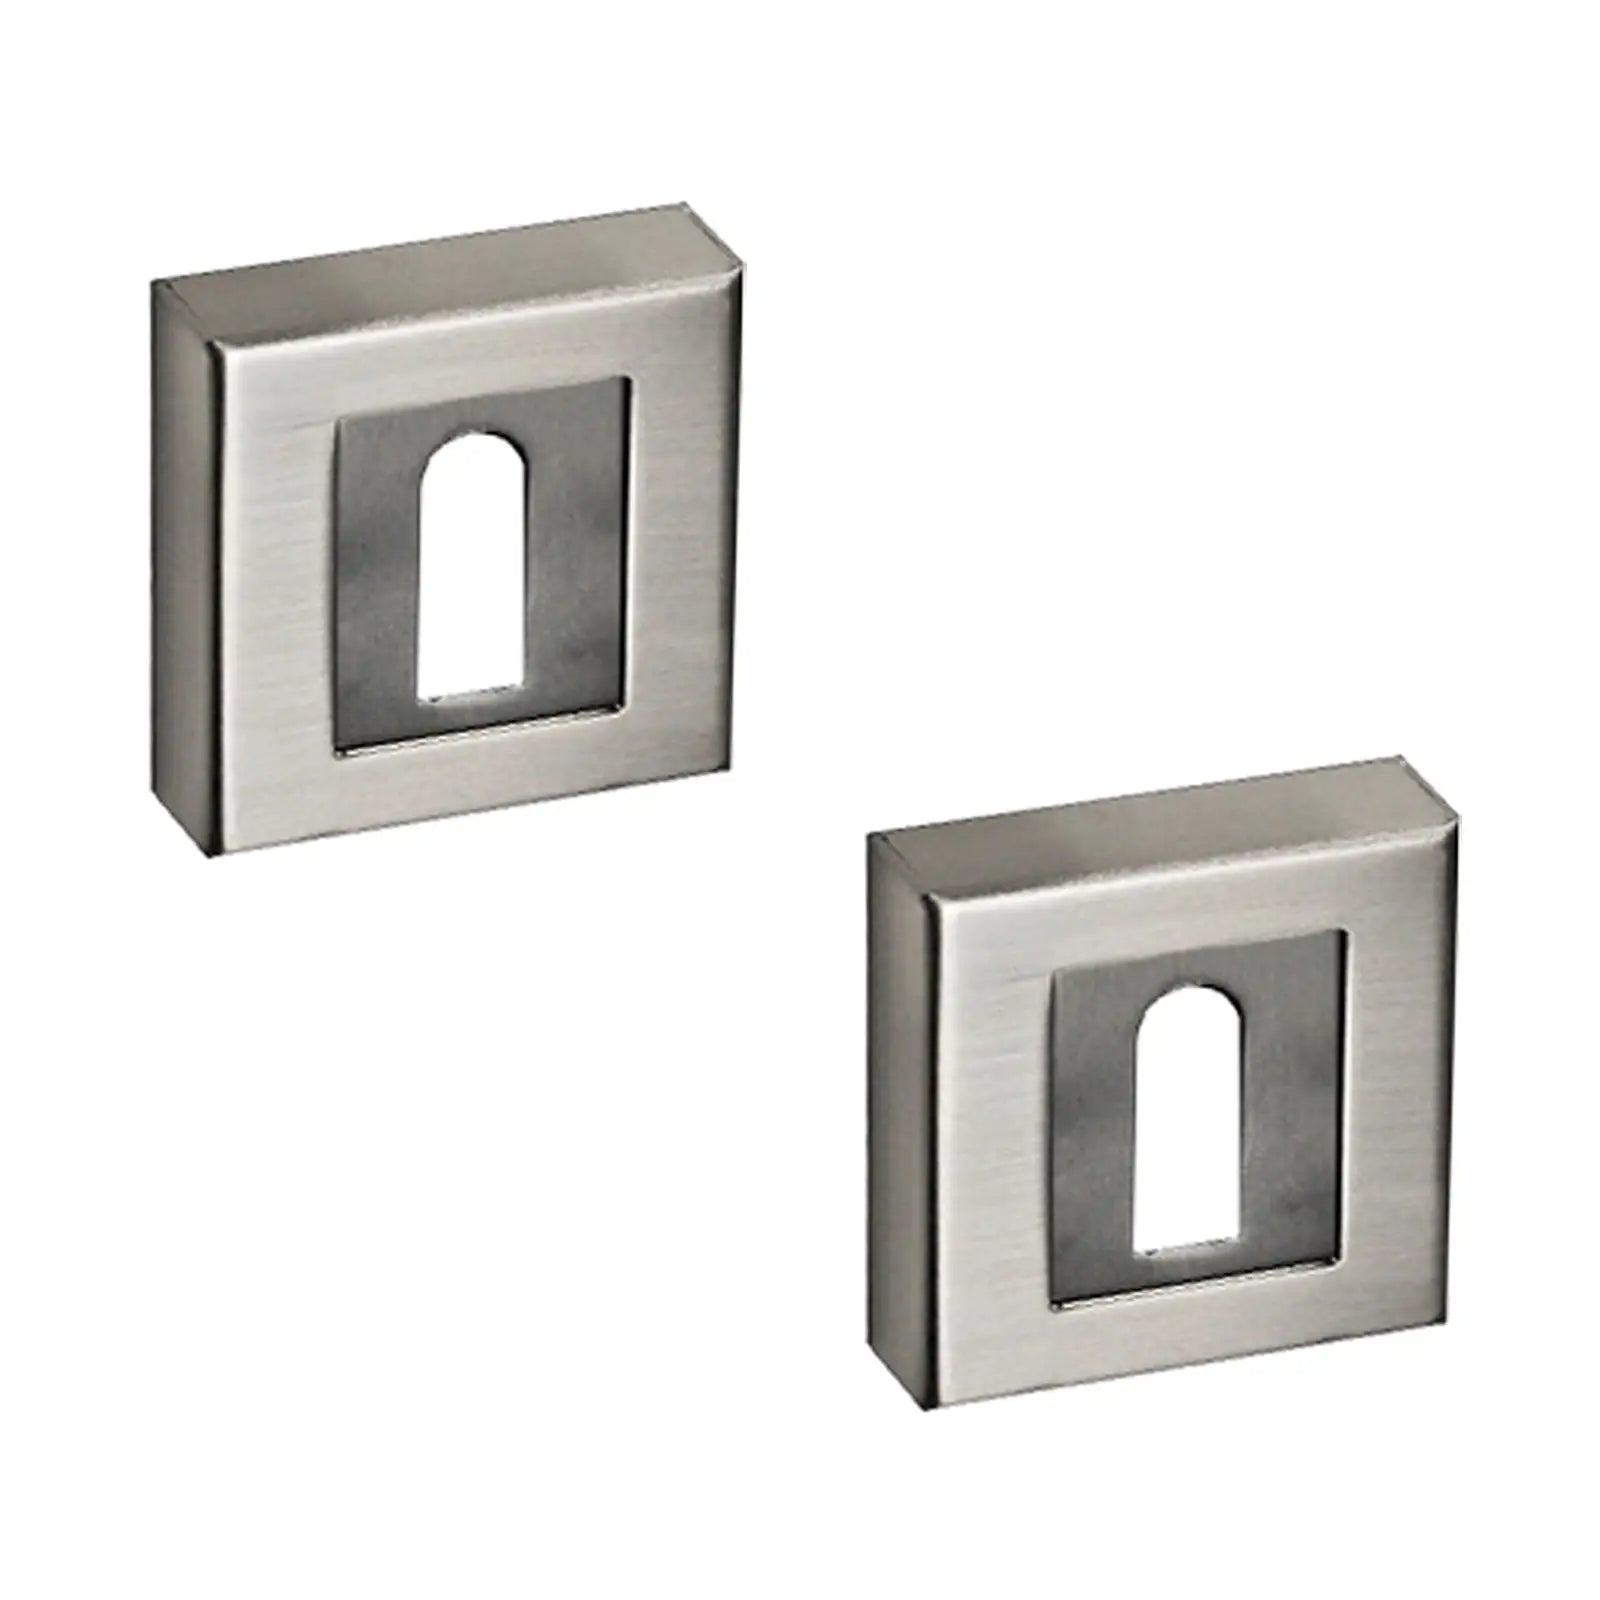 Square Keyhole Cover Escutcheon - Satin Nickel - Decor And Decor